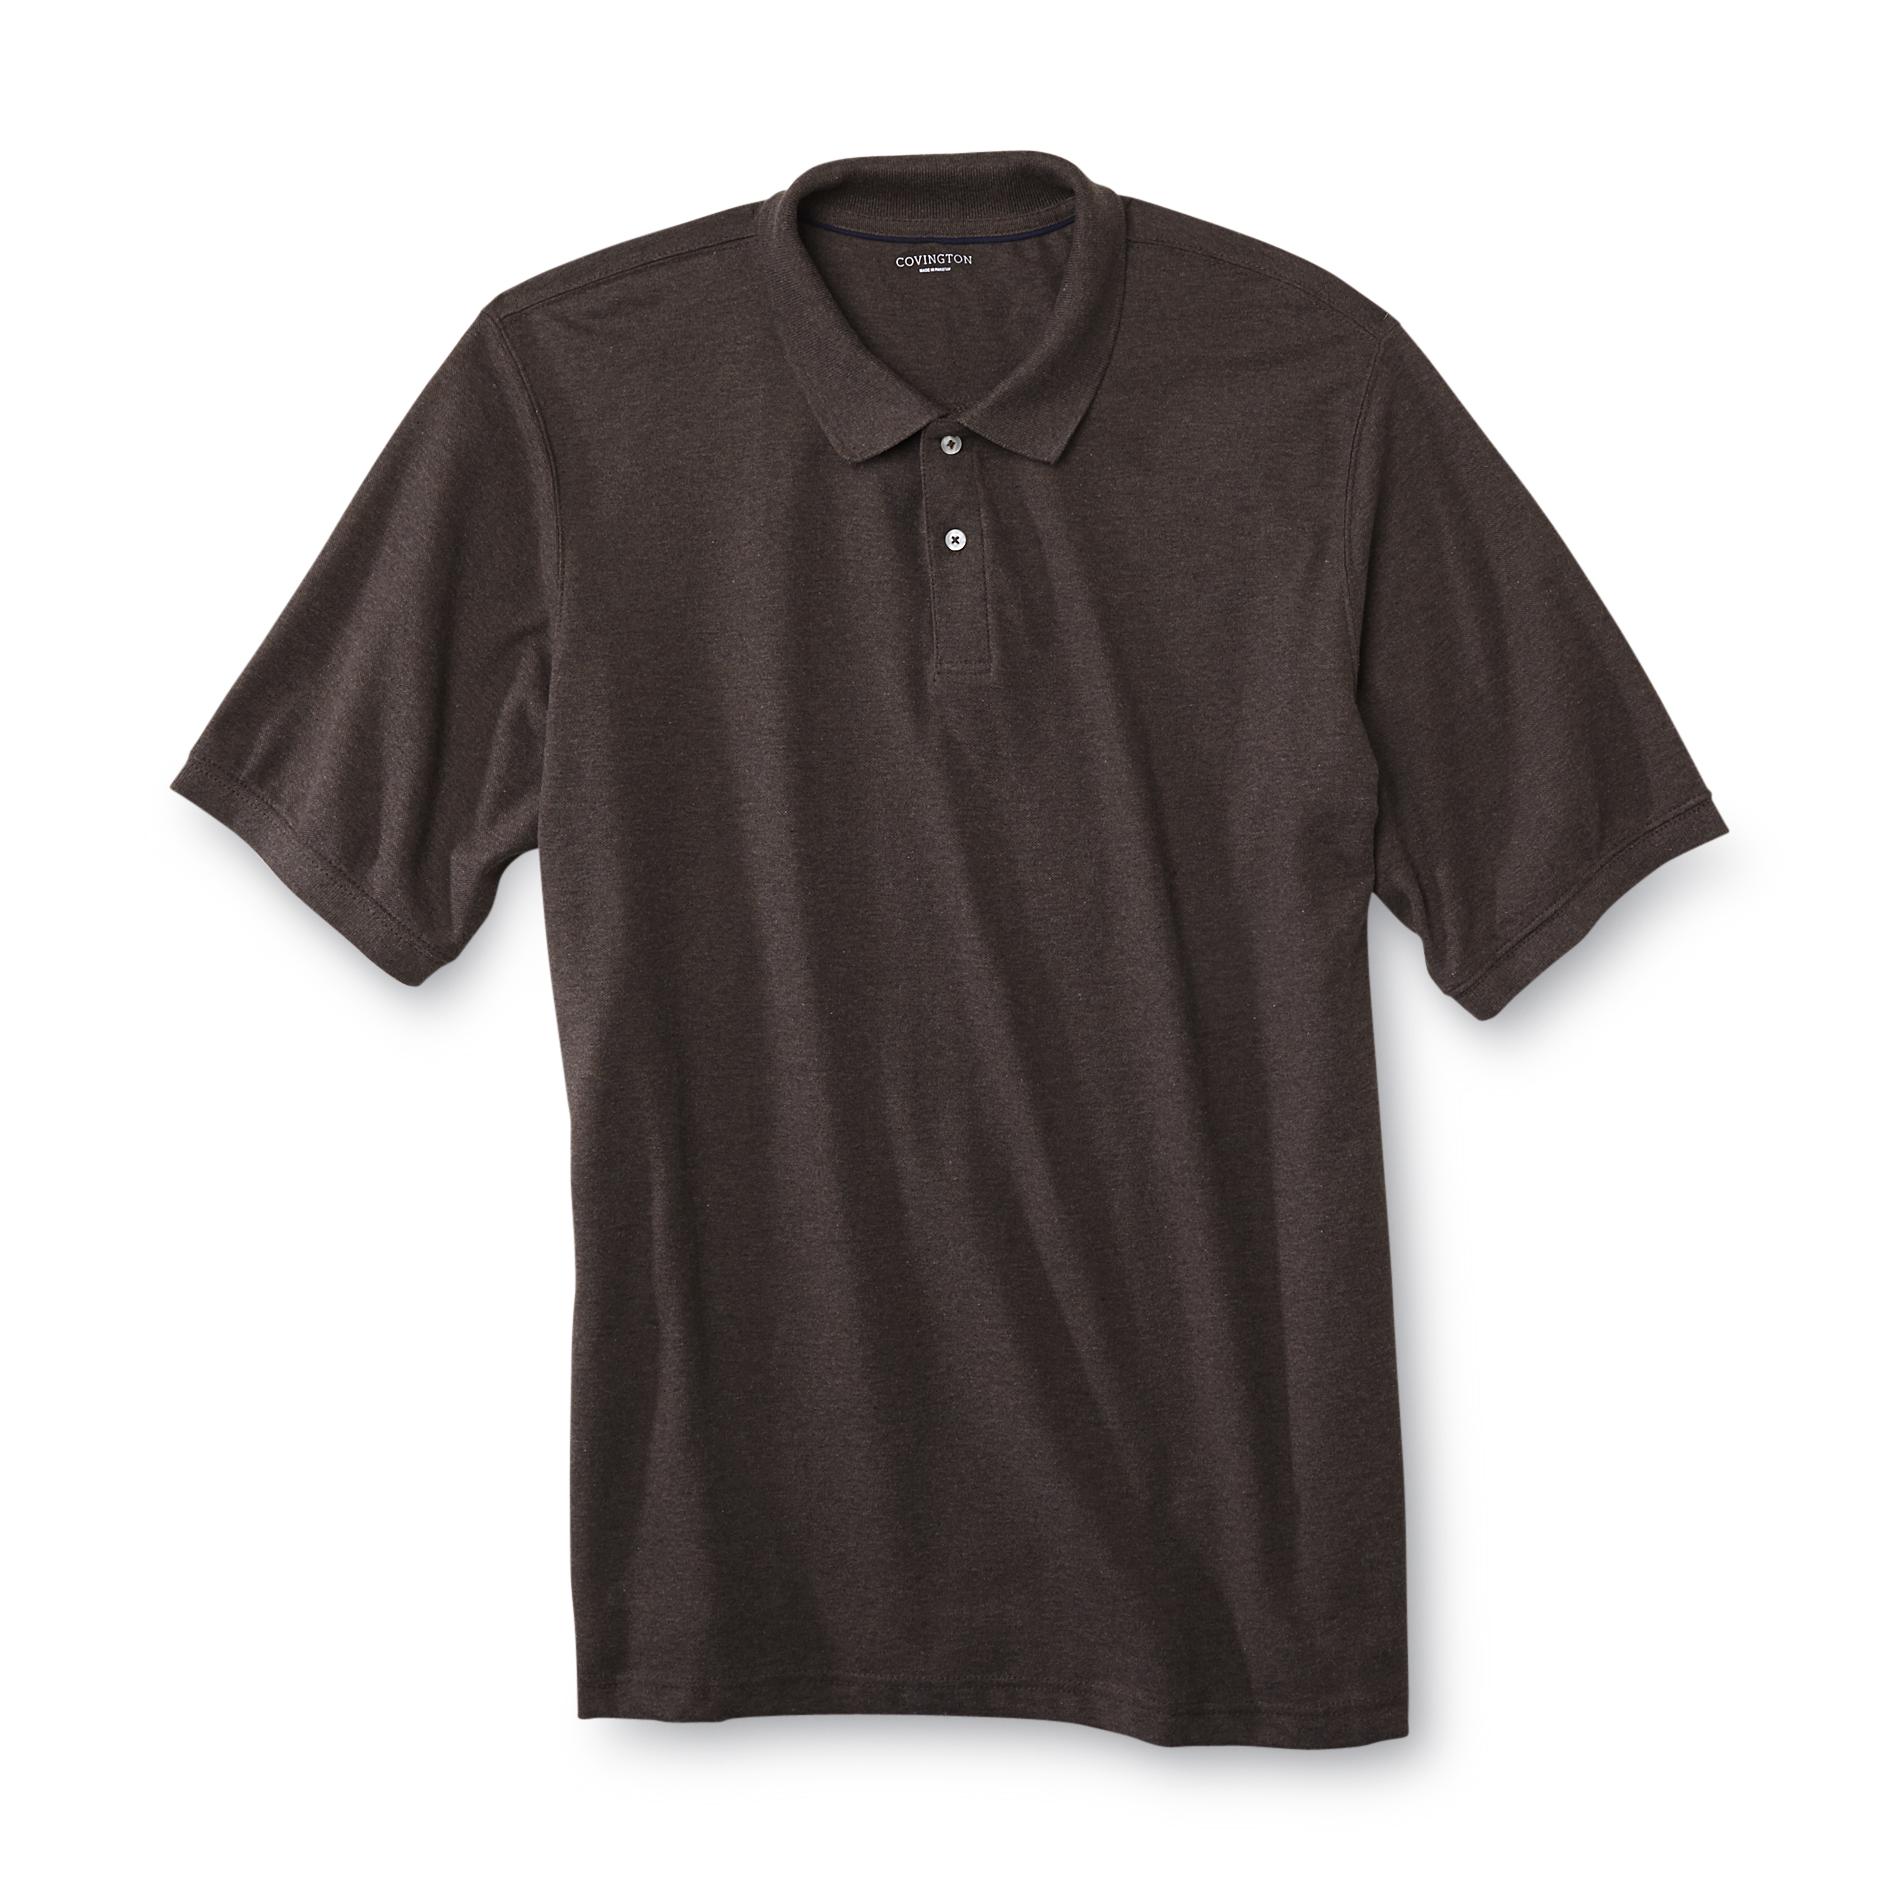 Covington Men's Big & Tall Pique Polo Shirt